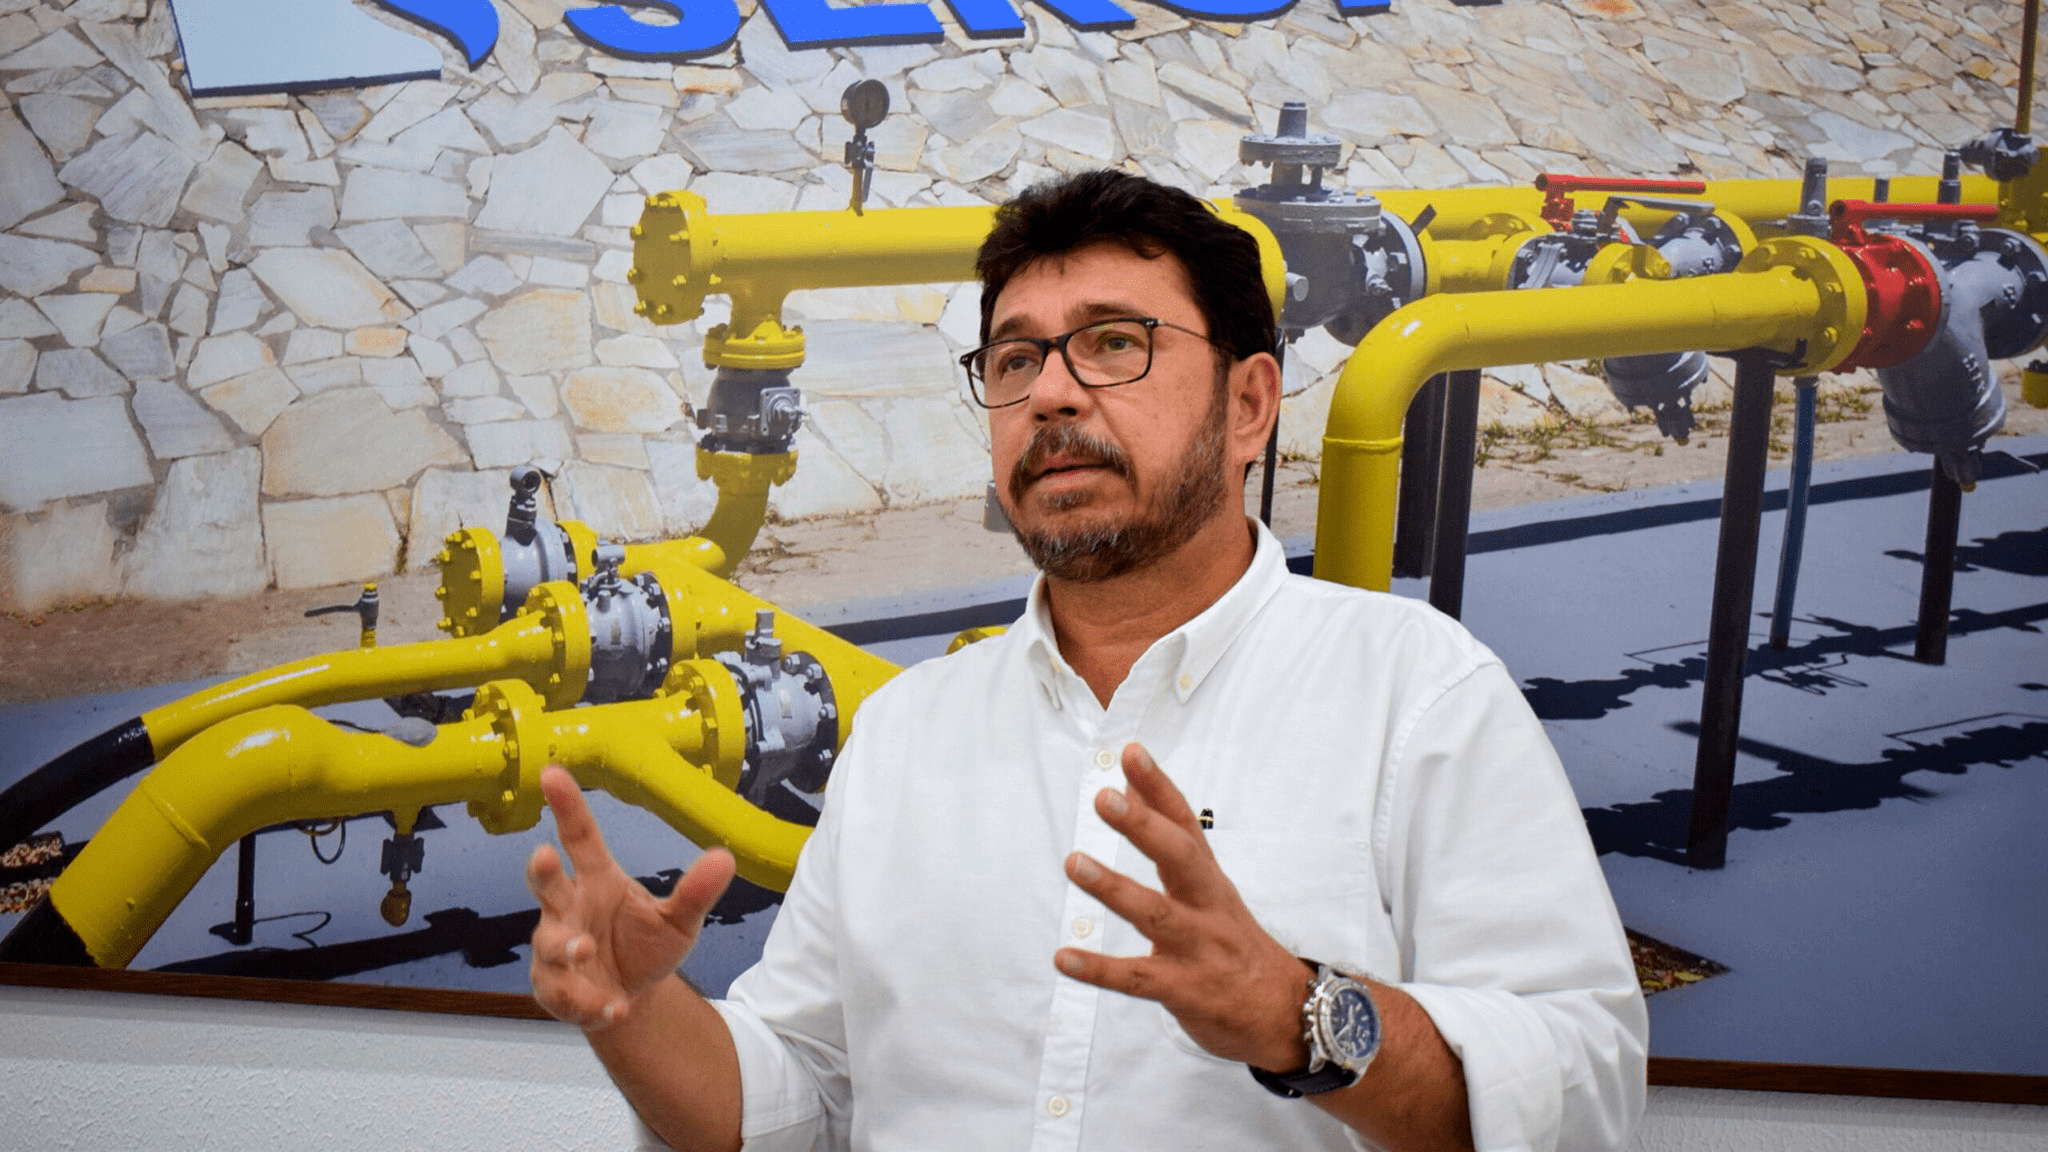 Valmor Barbosa, presidente da Sergas, distribuidora de Gás Natural de Sergipe